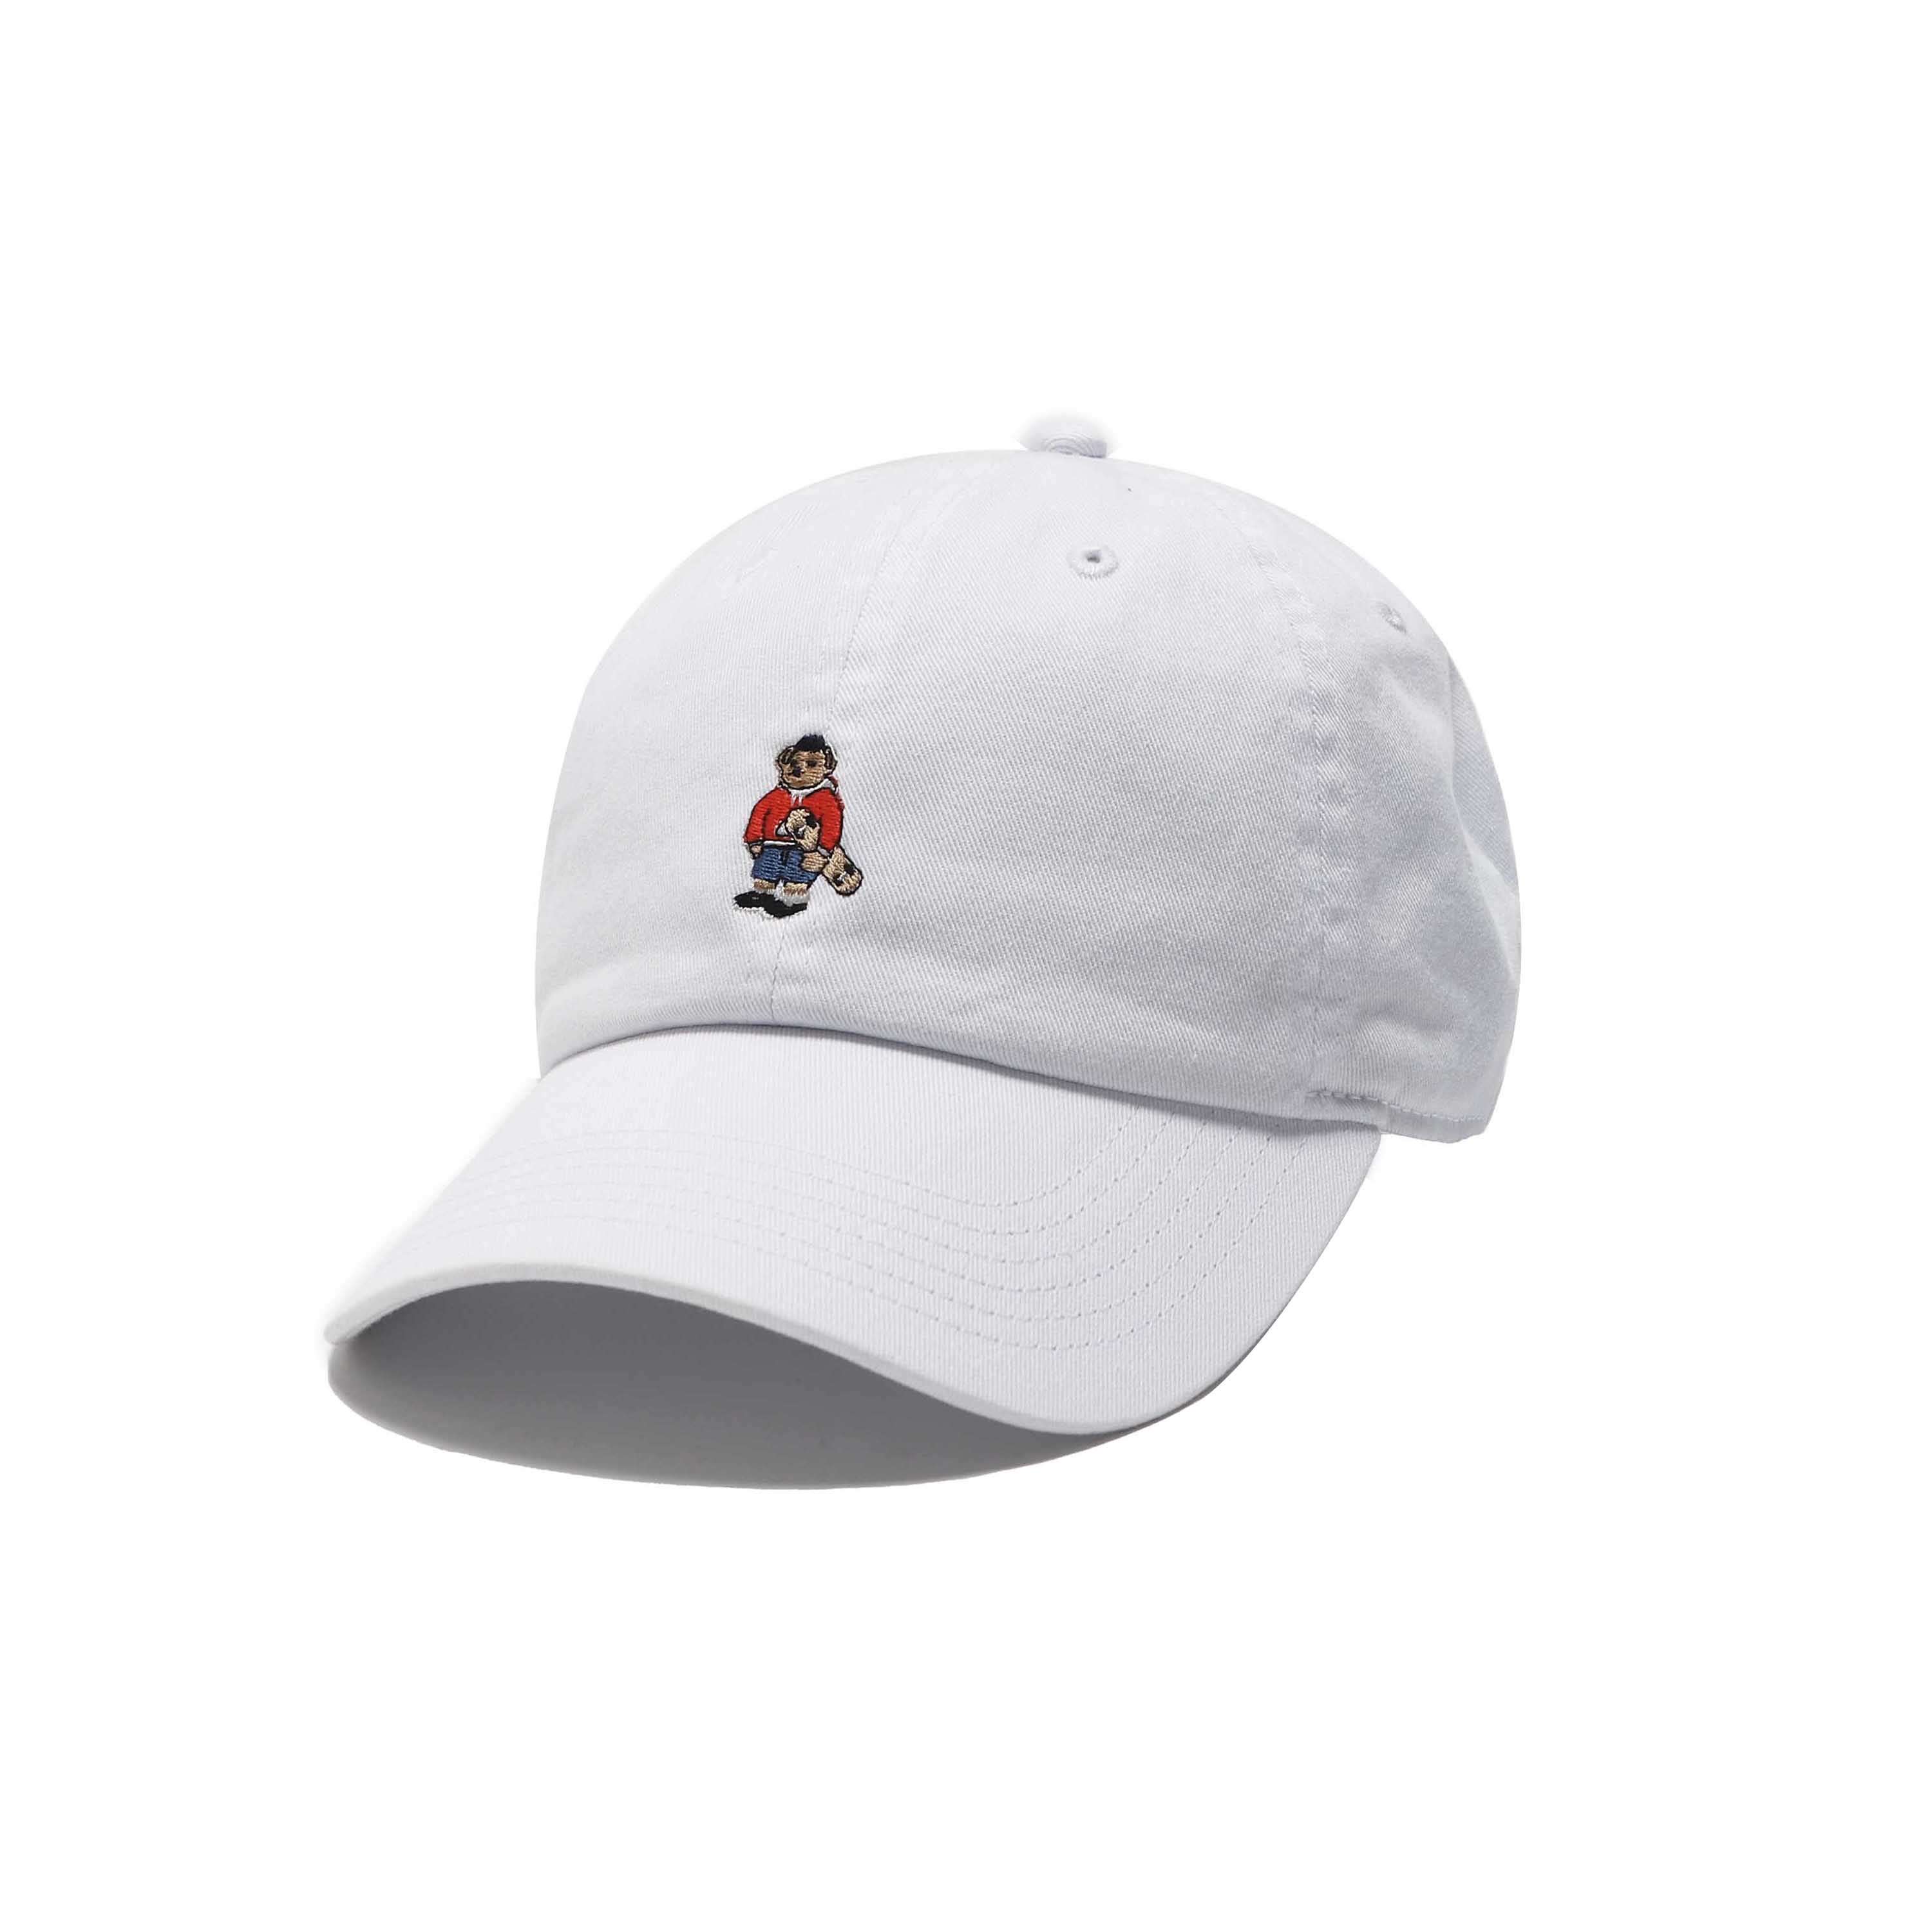 ROSTER BEAR SK8 CAP - WHITE